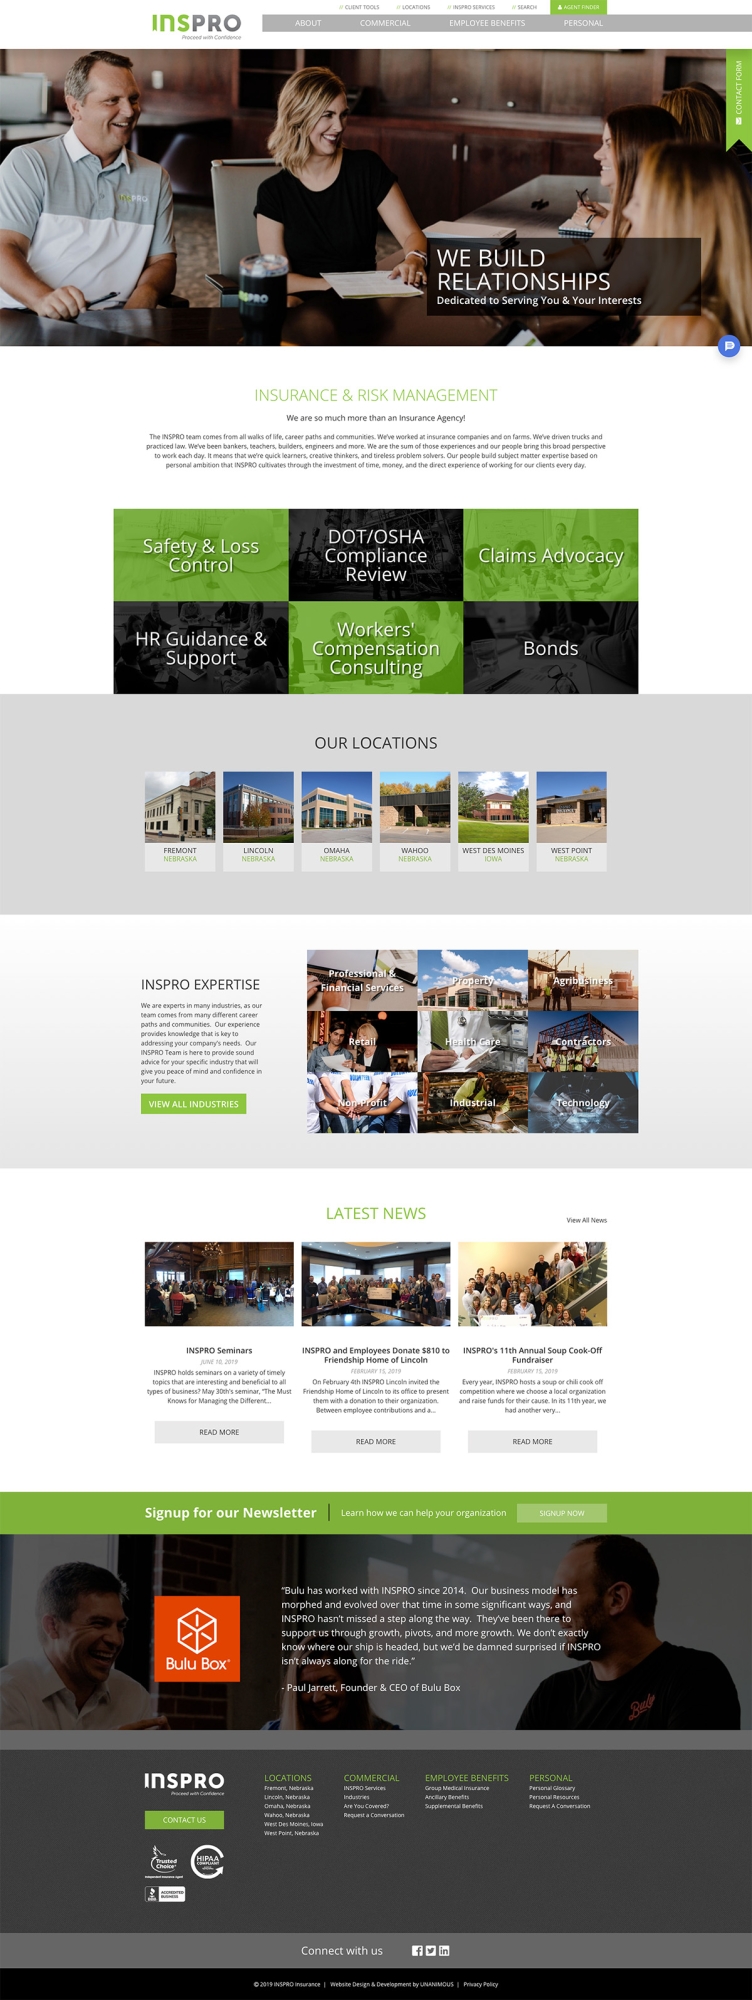 website design home